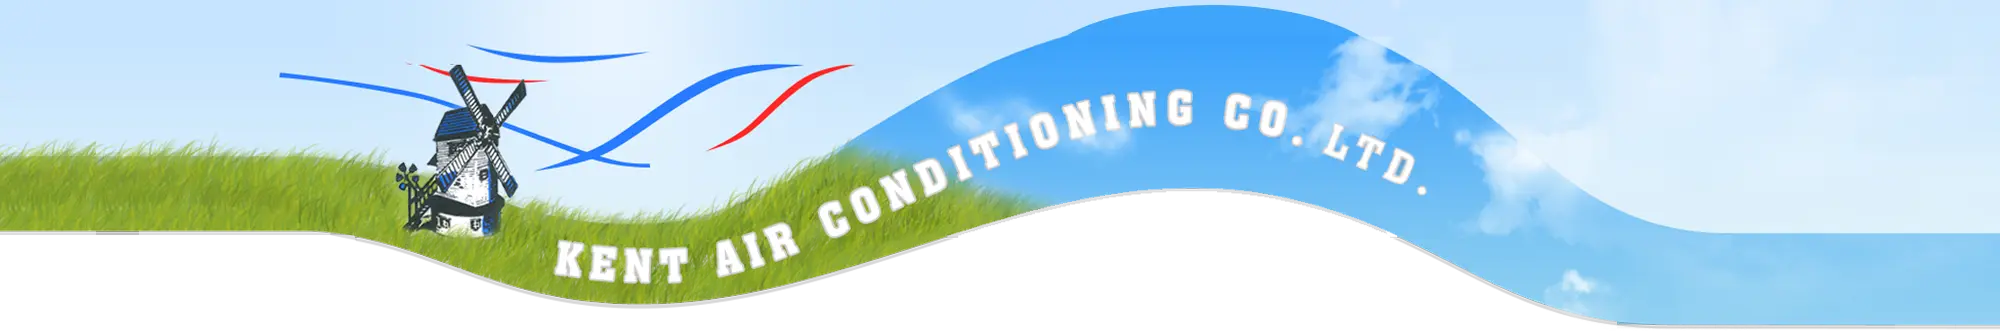 Air Conditioning Kent | Kentaircon